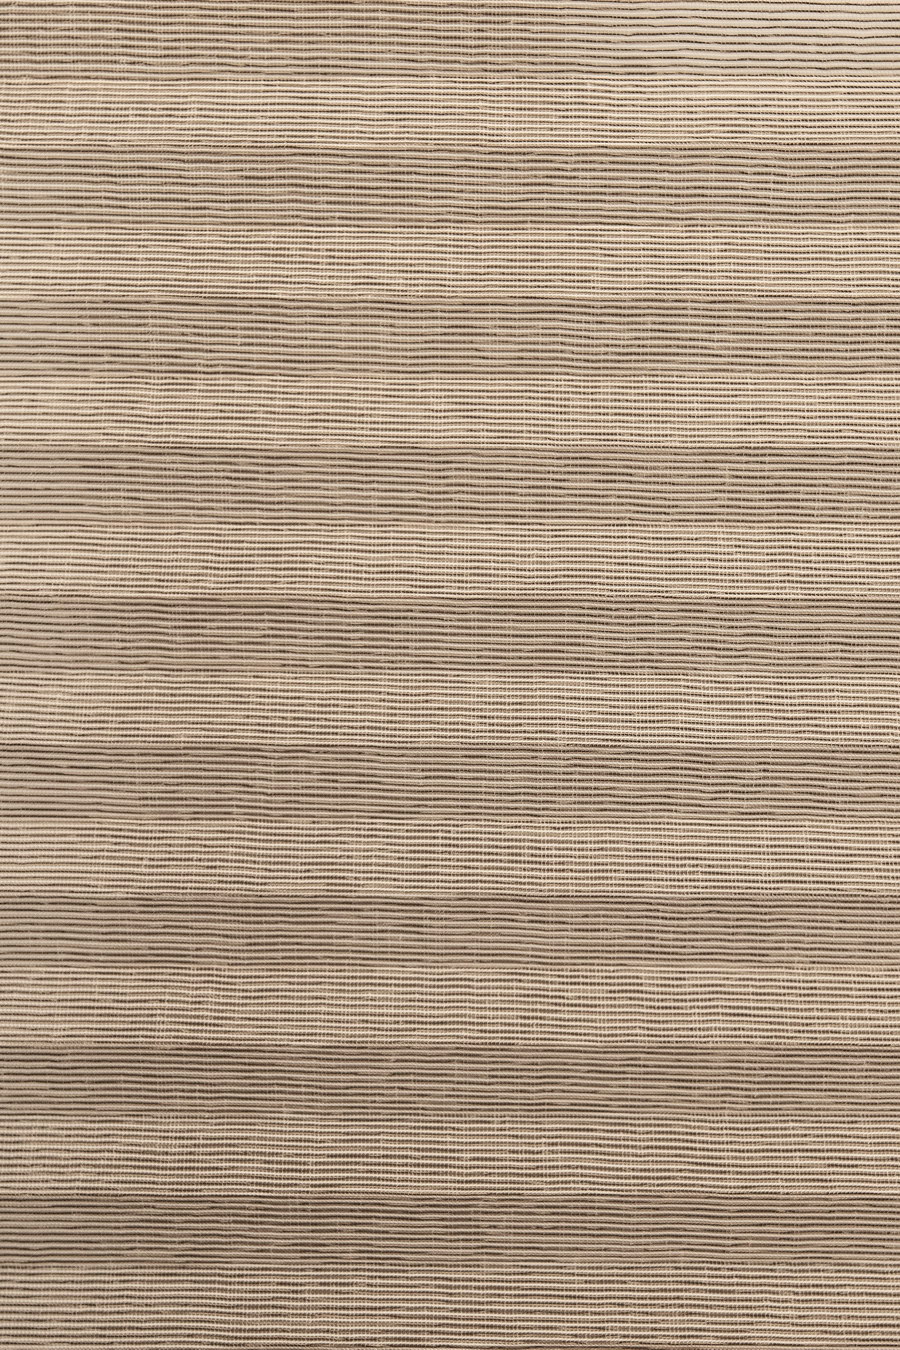 Ткань TRANSPARENT COLOR lund-brown 4852 для штор плиссе